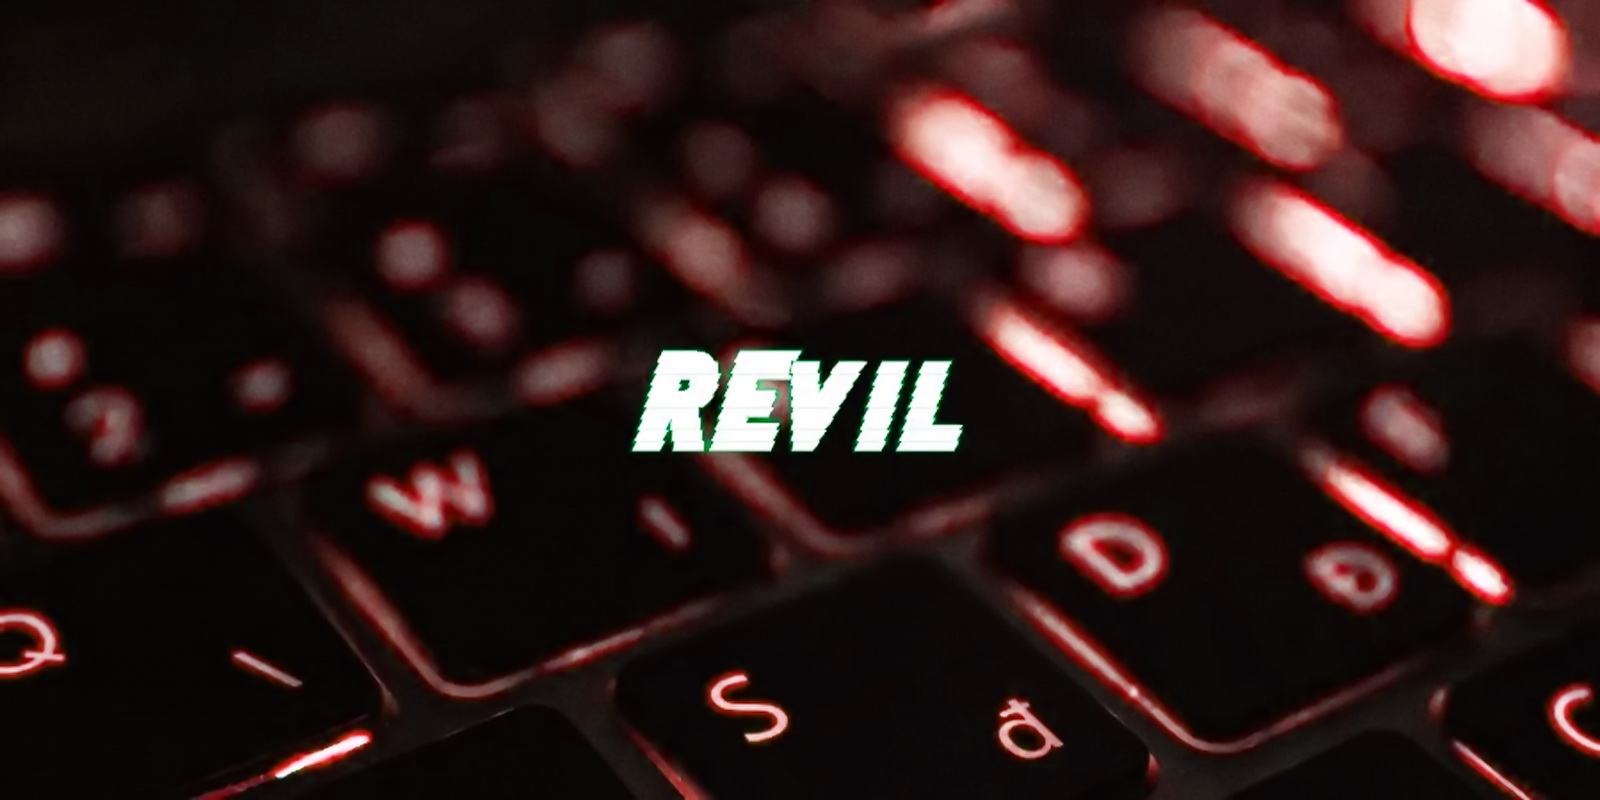 REvil resumed attacks